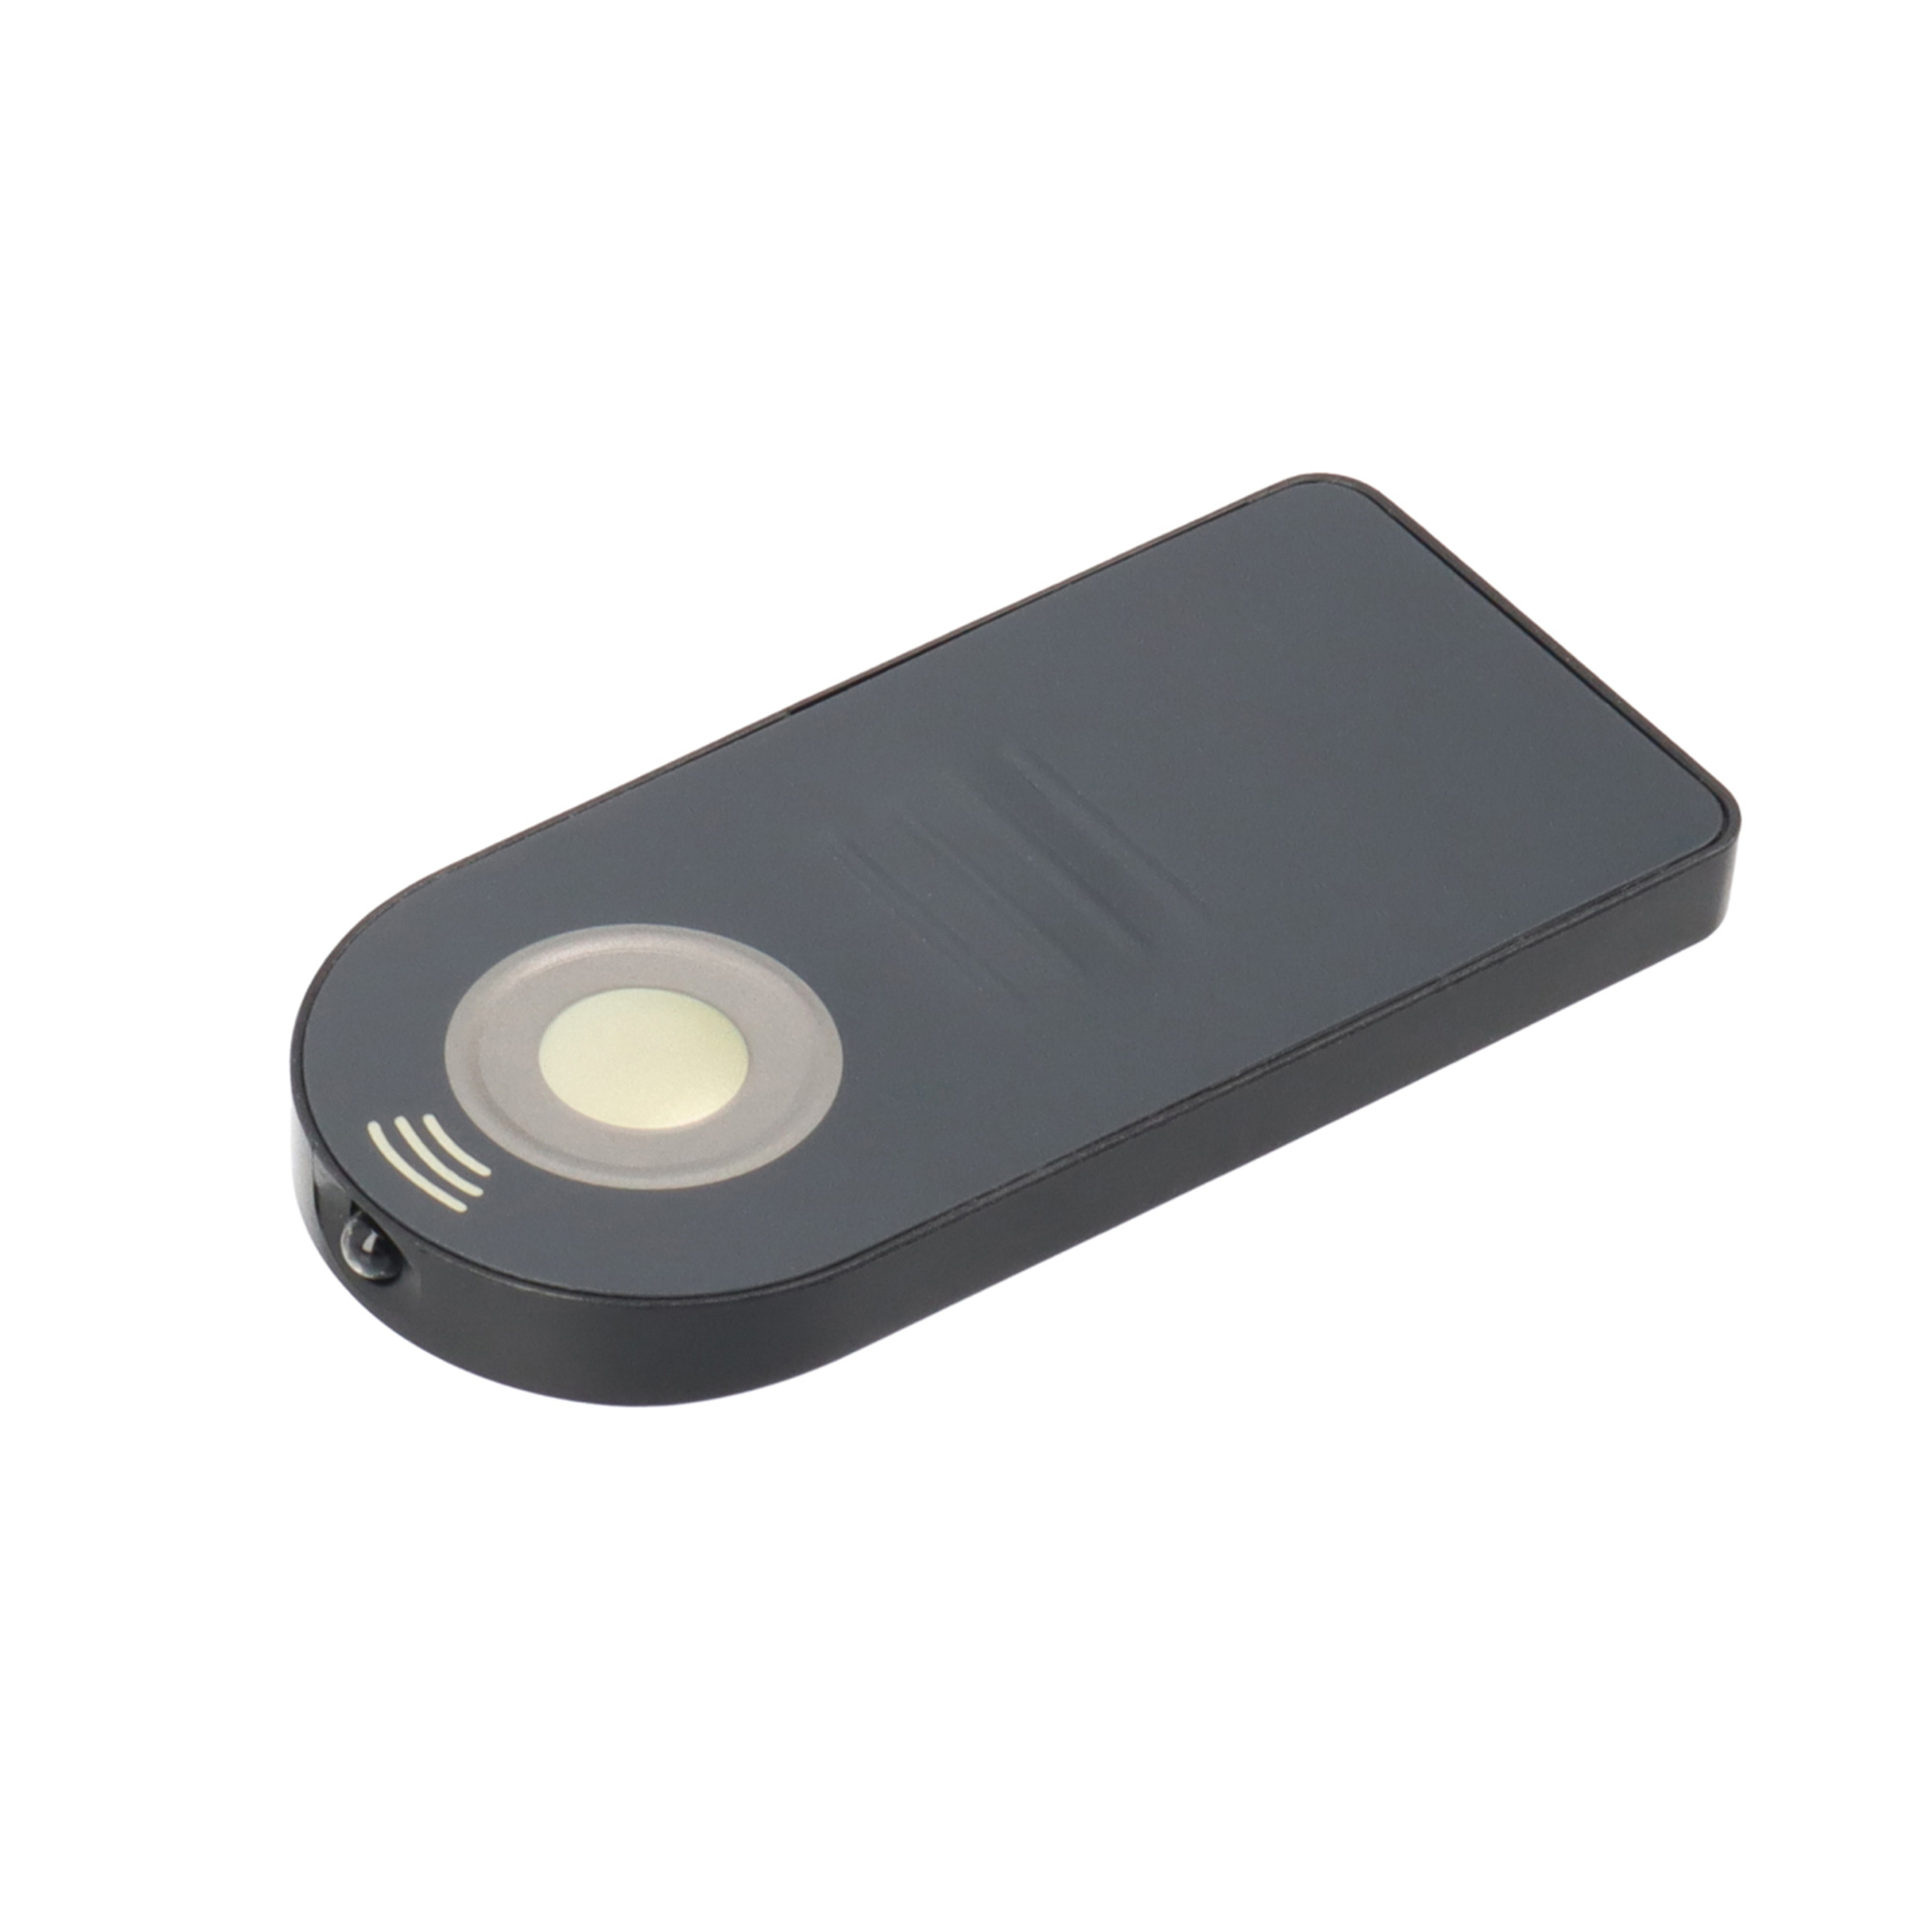 AYEX Infrarot Fernauslöser Fernauslöser, Mini Black Kameras, für Infrarot Nikon Fernbedienung IR